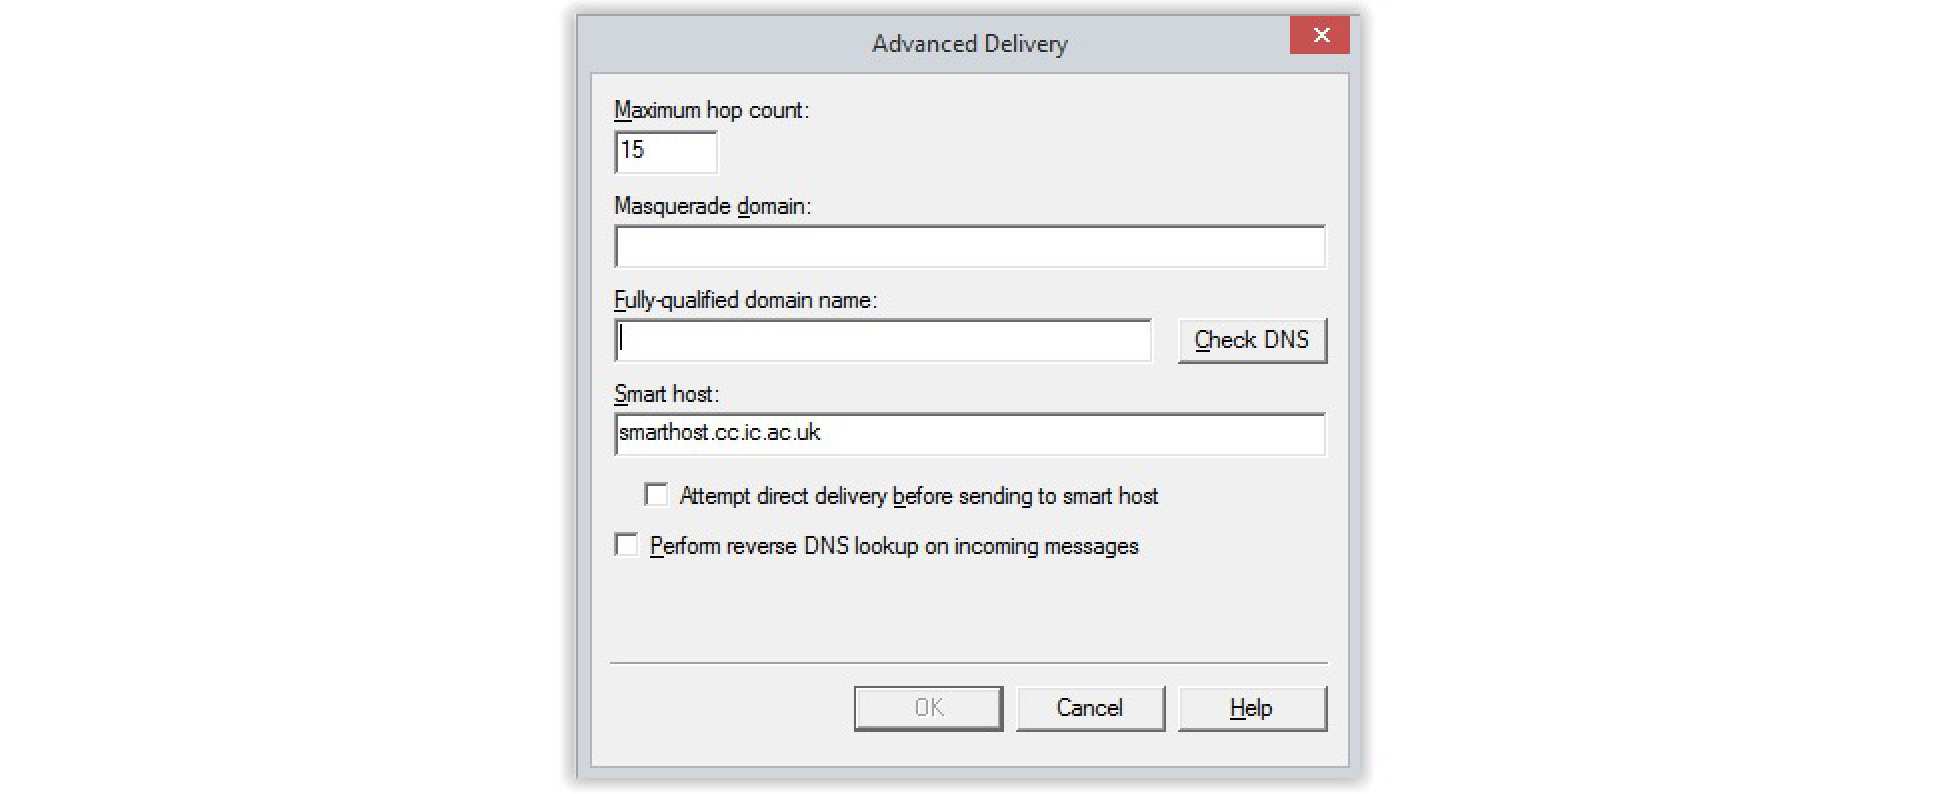 IIS smart host settings